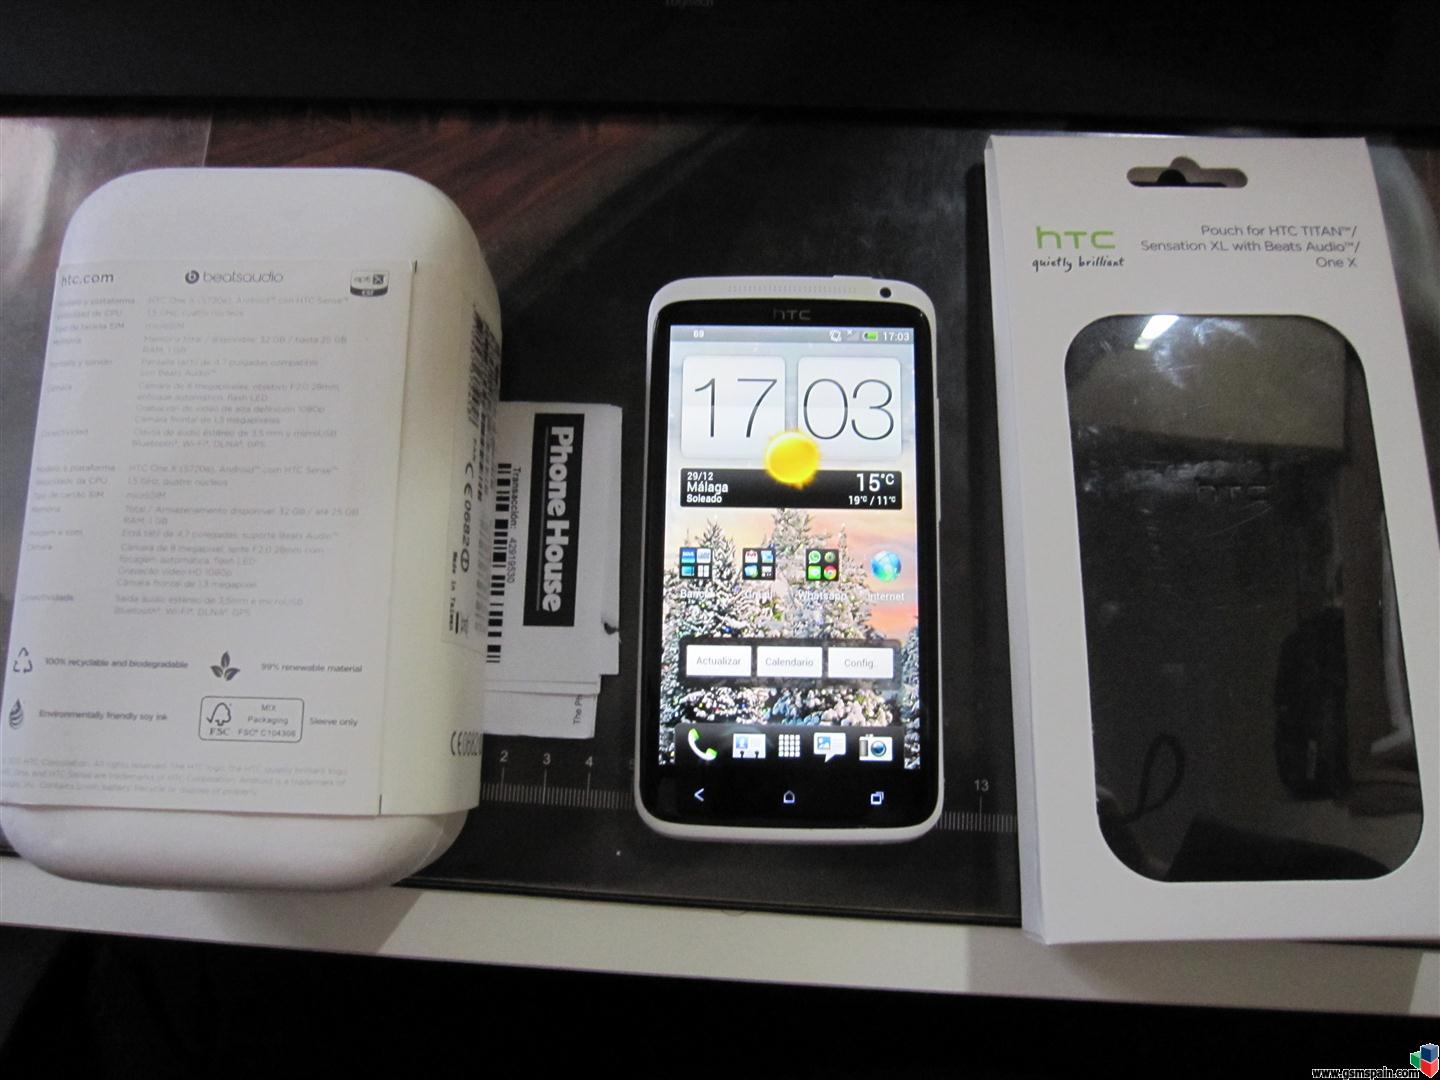 [VENDO] HTC One X Blanco 32GB Libre de origen con factura y Funda Original.